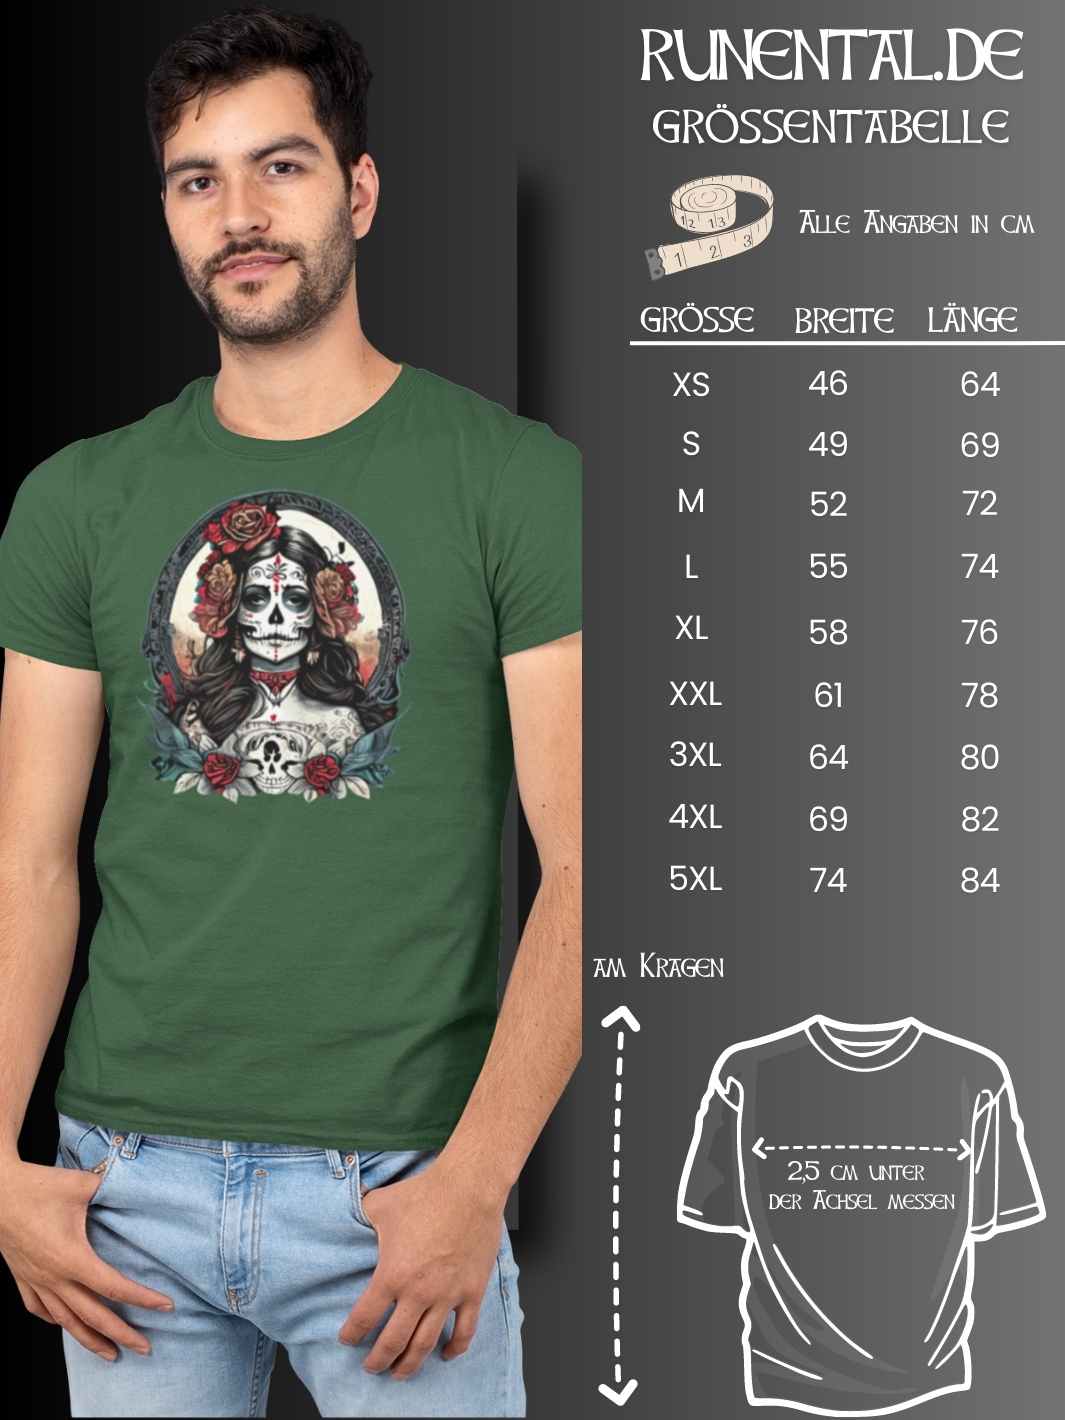 Größentabelle für das La Catrina Unisex Organic T-Shirt, zur präzisen Auswahl deiner idealen Passform – Runental.de